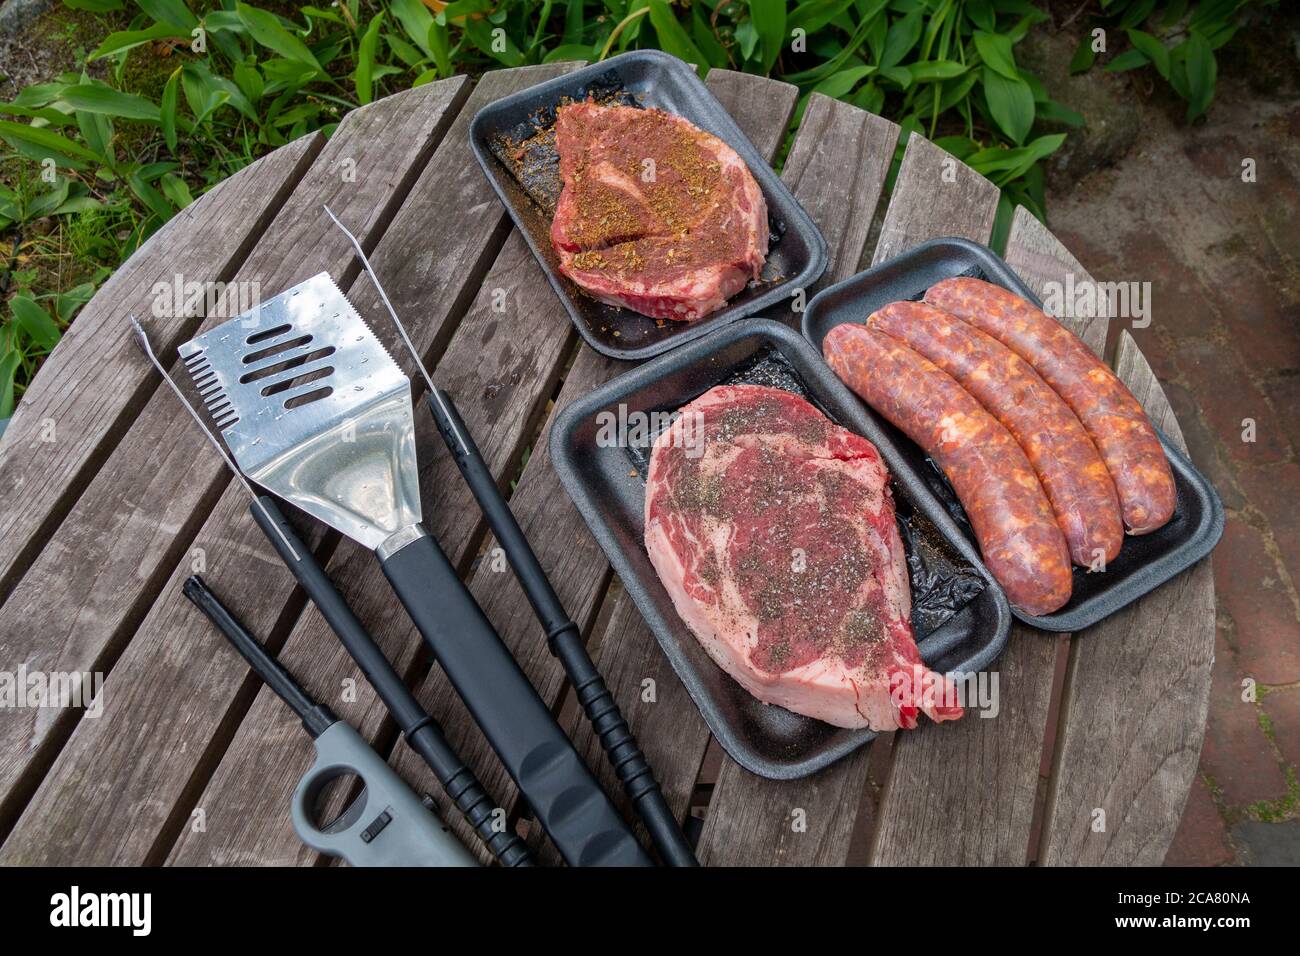 preparación de mesa exterior para carnes a la parrilla barbacoa exterior verano cocinar fuera Foto de stock